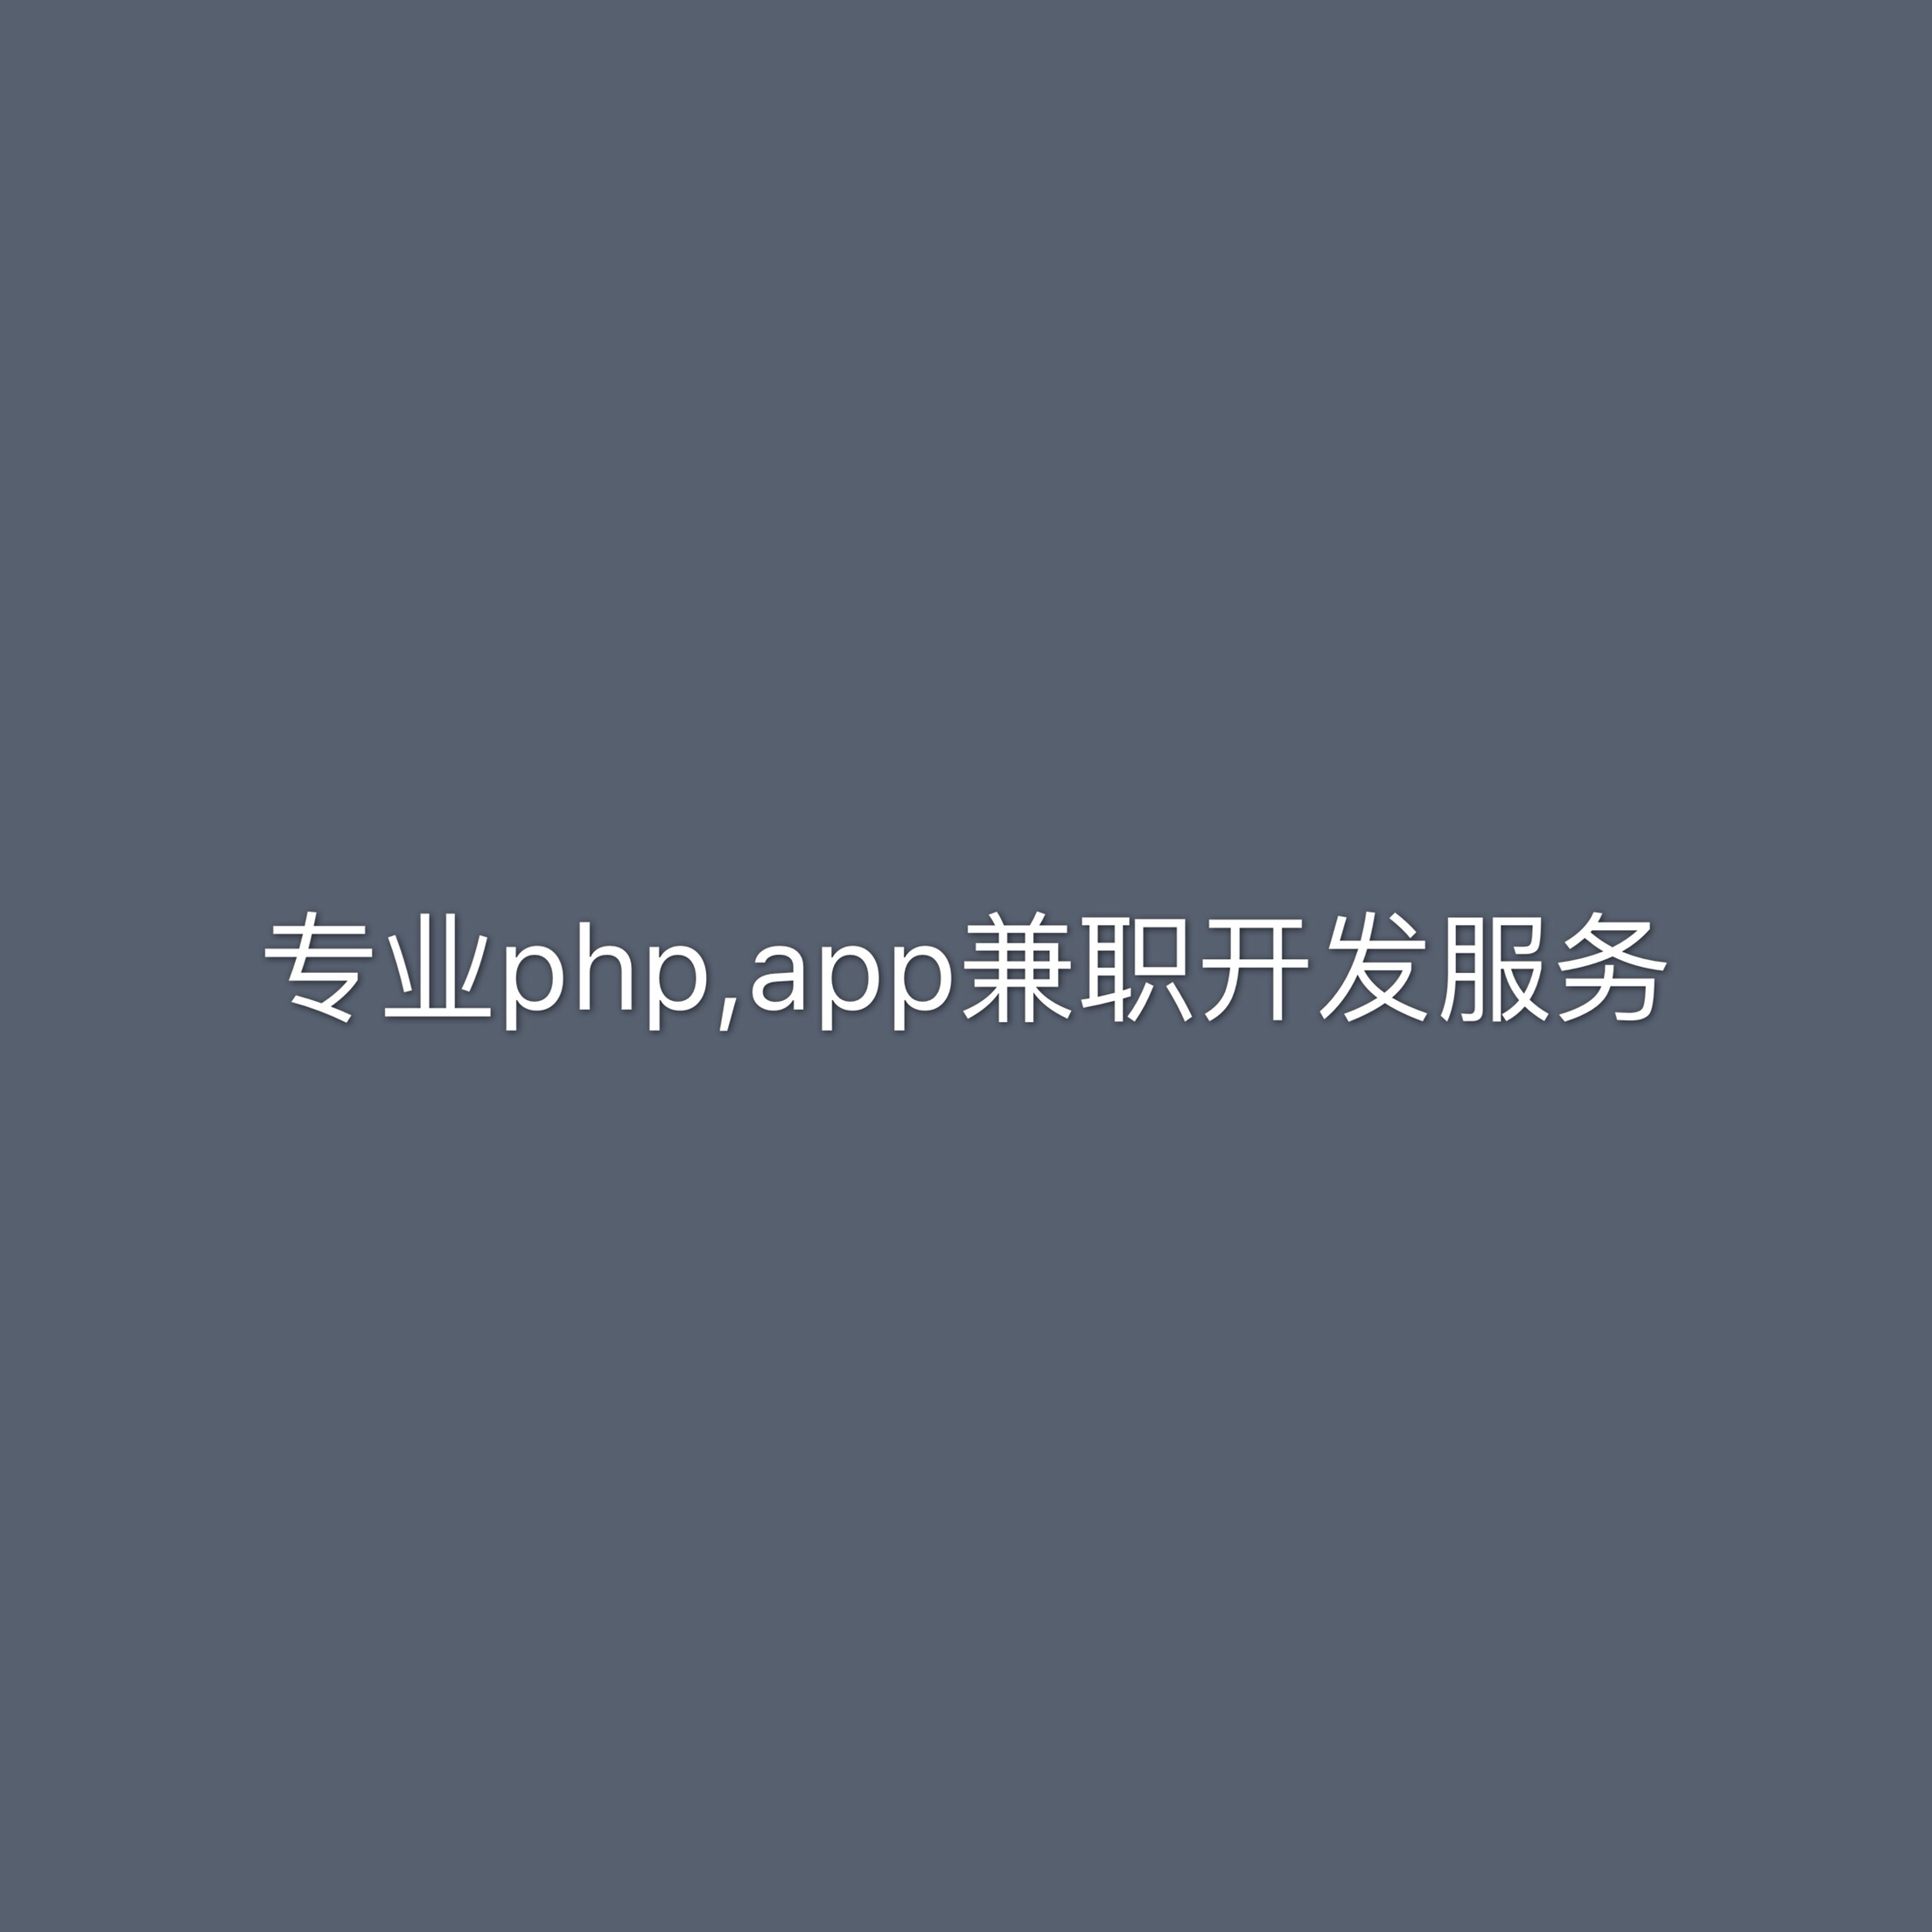 APP网站小程序开发工作室